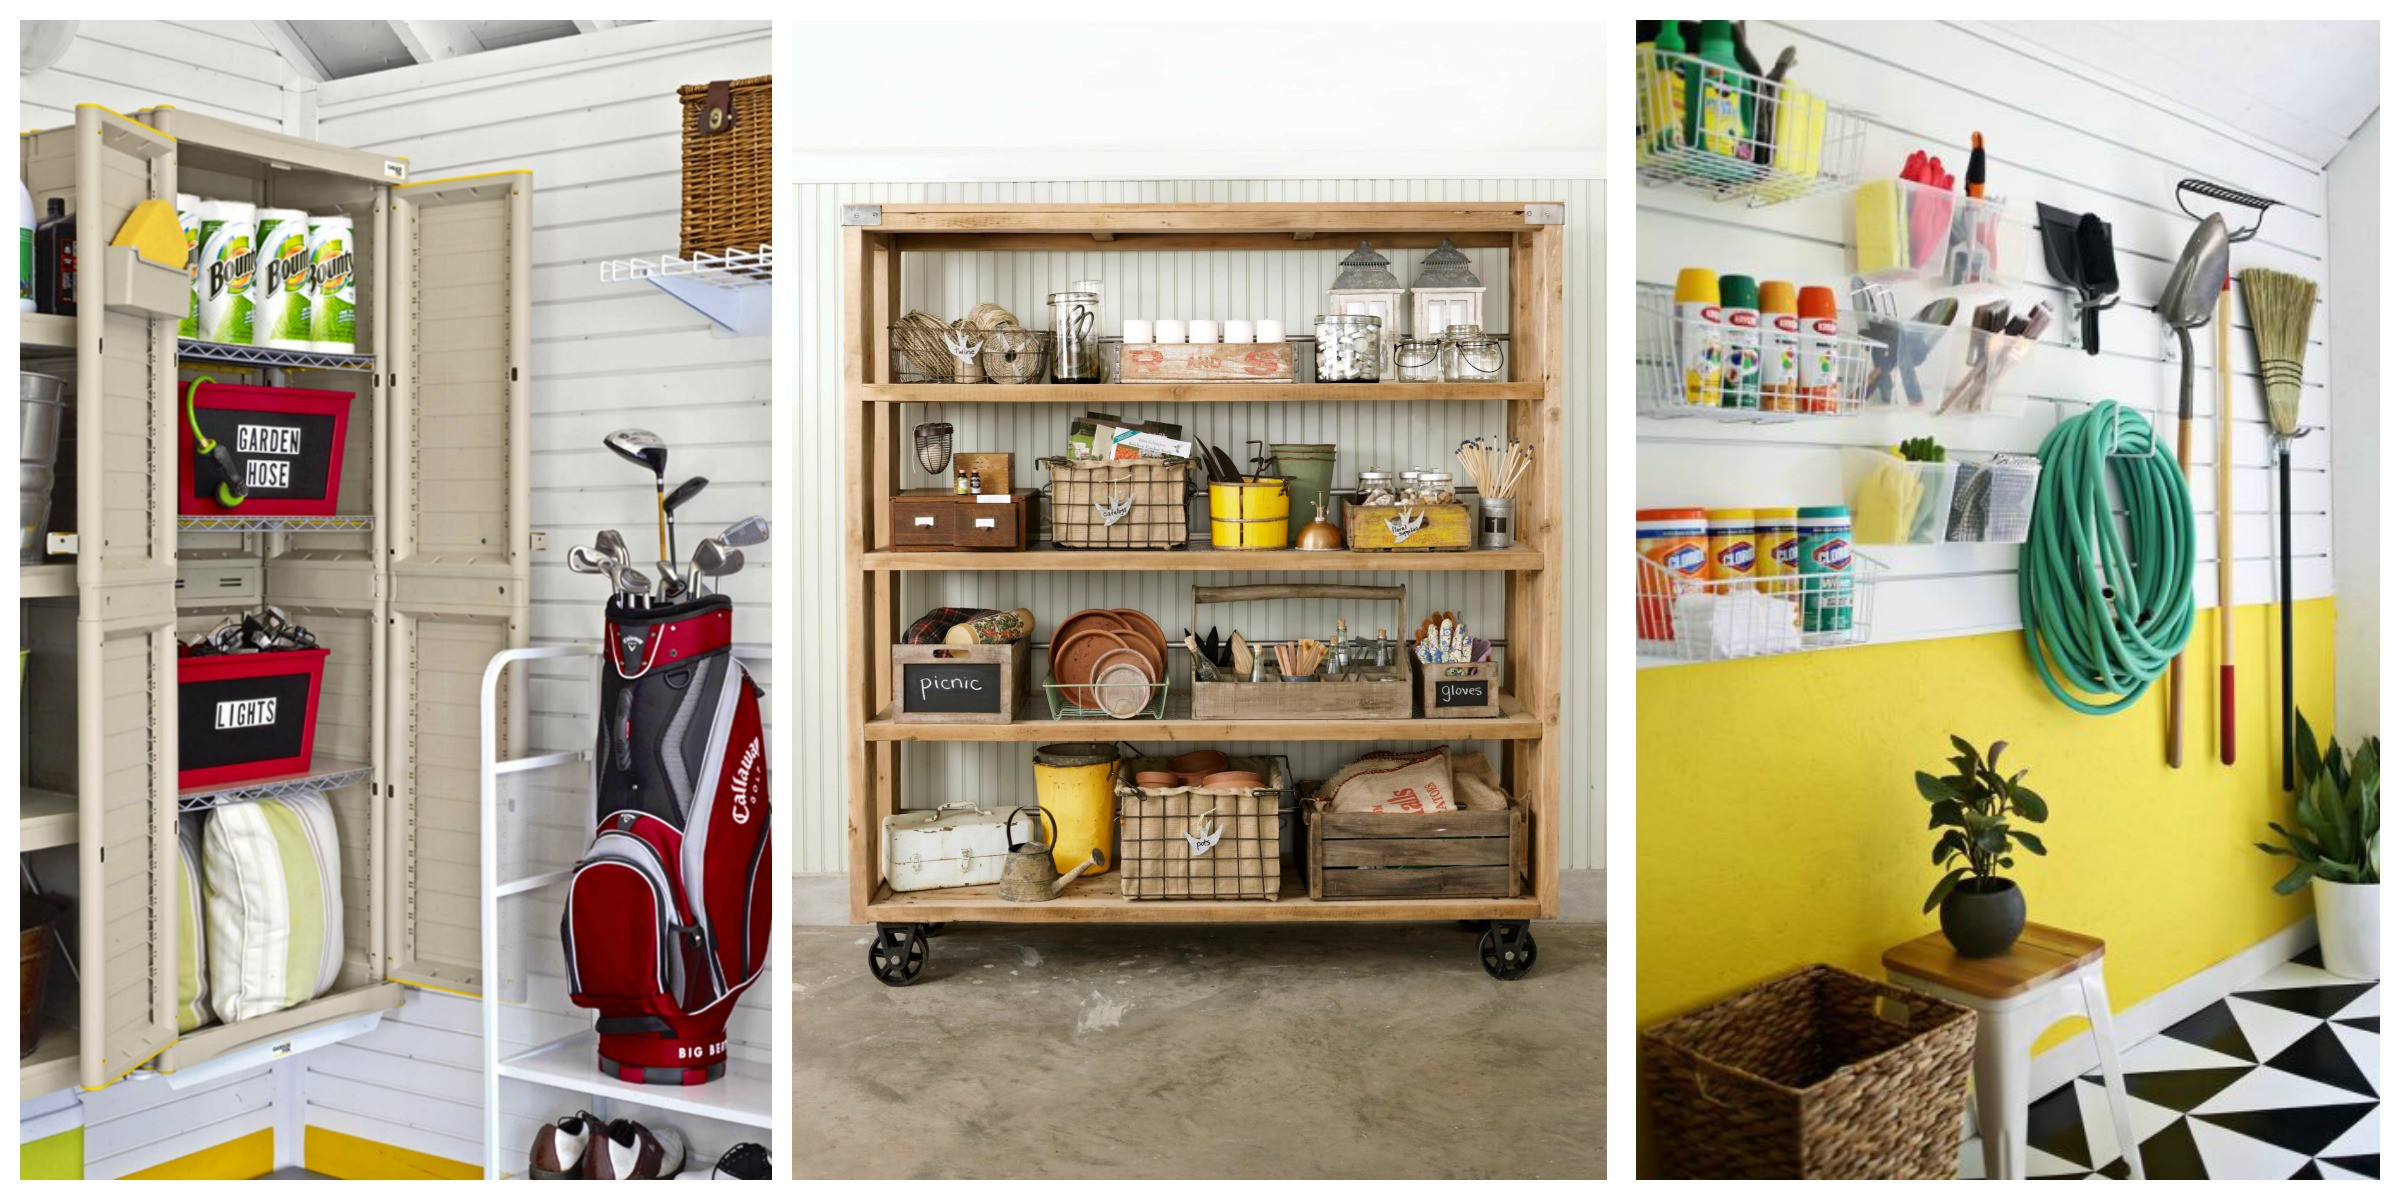 DIY Garage Organization
 14 of the Best Garage Organization Ideas on Pinterest